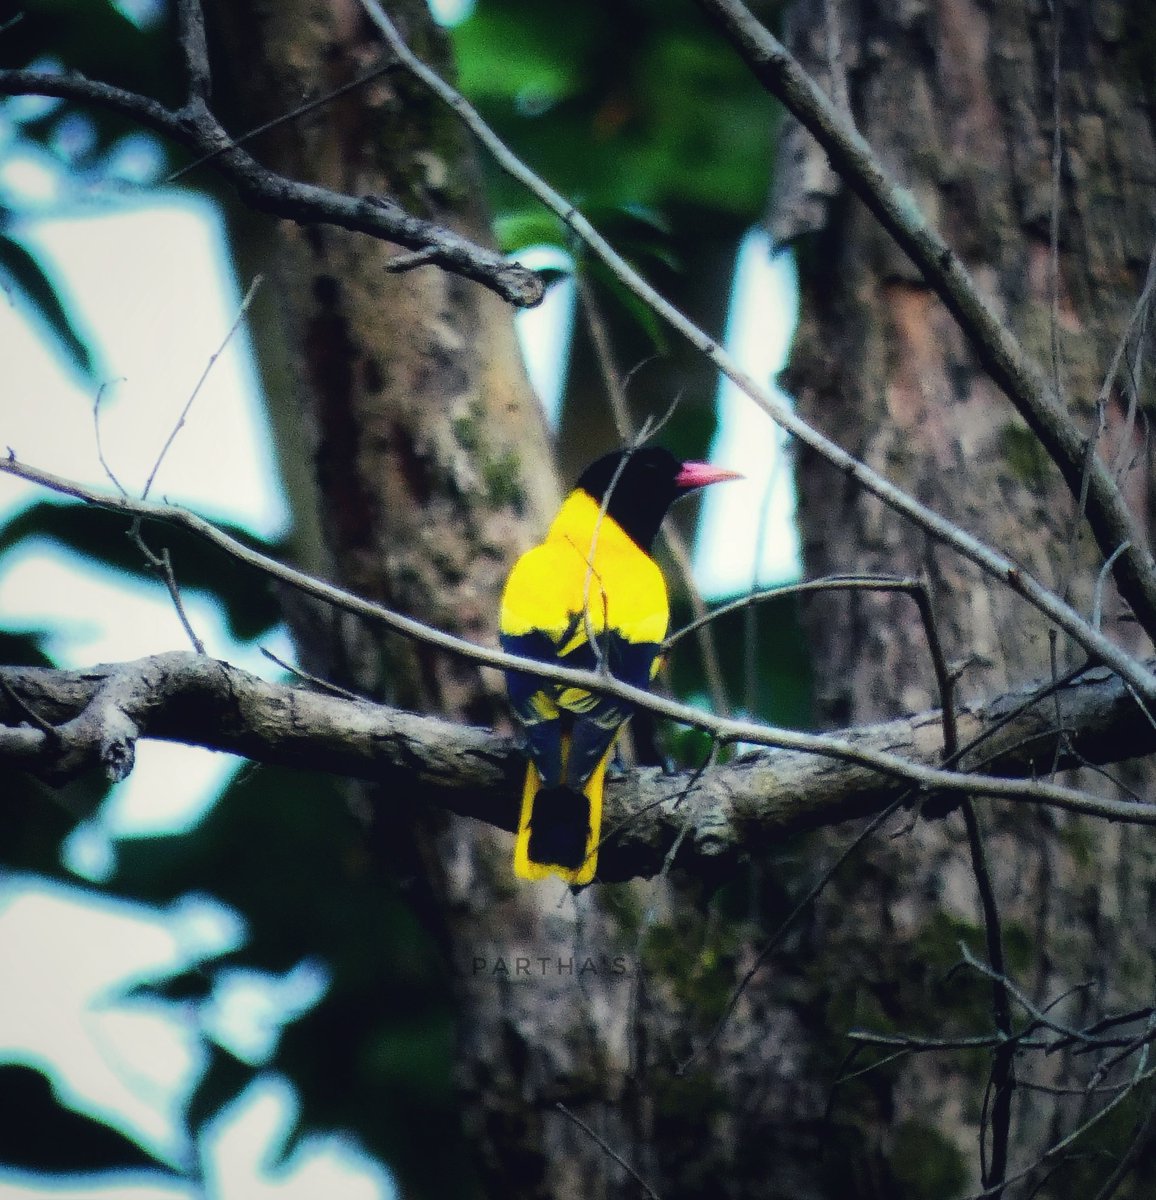 Black-Hooded Oriole - Birds of Mahananda.
@IndiAves @lumix_india @Britnatureguide @NatGeoIndia @NatureIn_Focus @natgeowild #BirdsOfTwitter #BirdsSeenIn2023 #TwitterNatureCommunity #BBCWildlifePOTD #BirdsOfTwitter #birdphotography #ThePhotoHour #NaturePhotograhpy